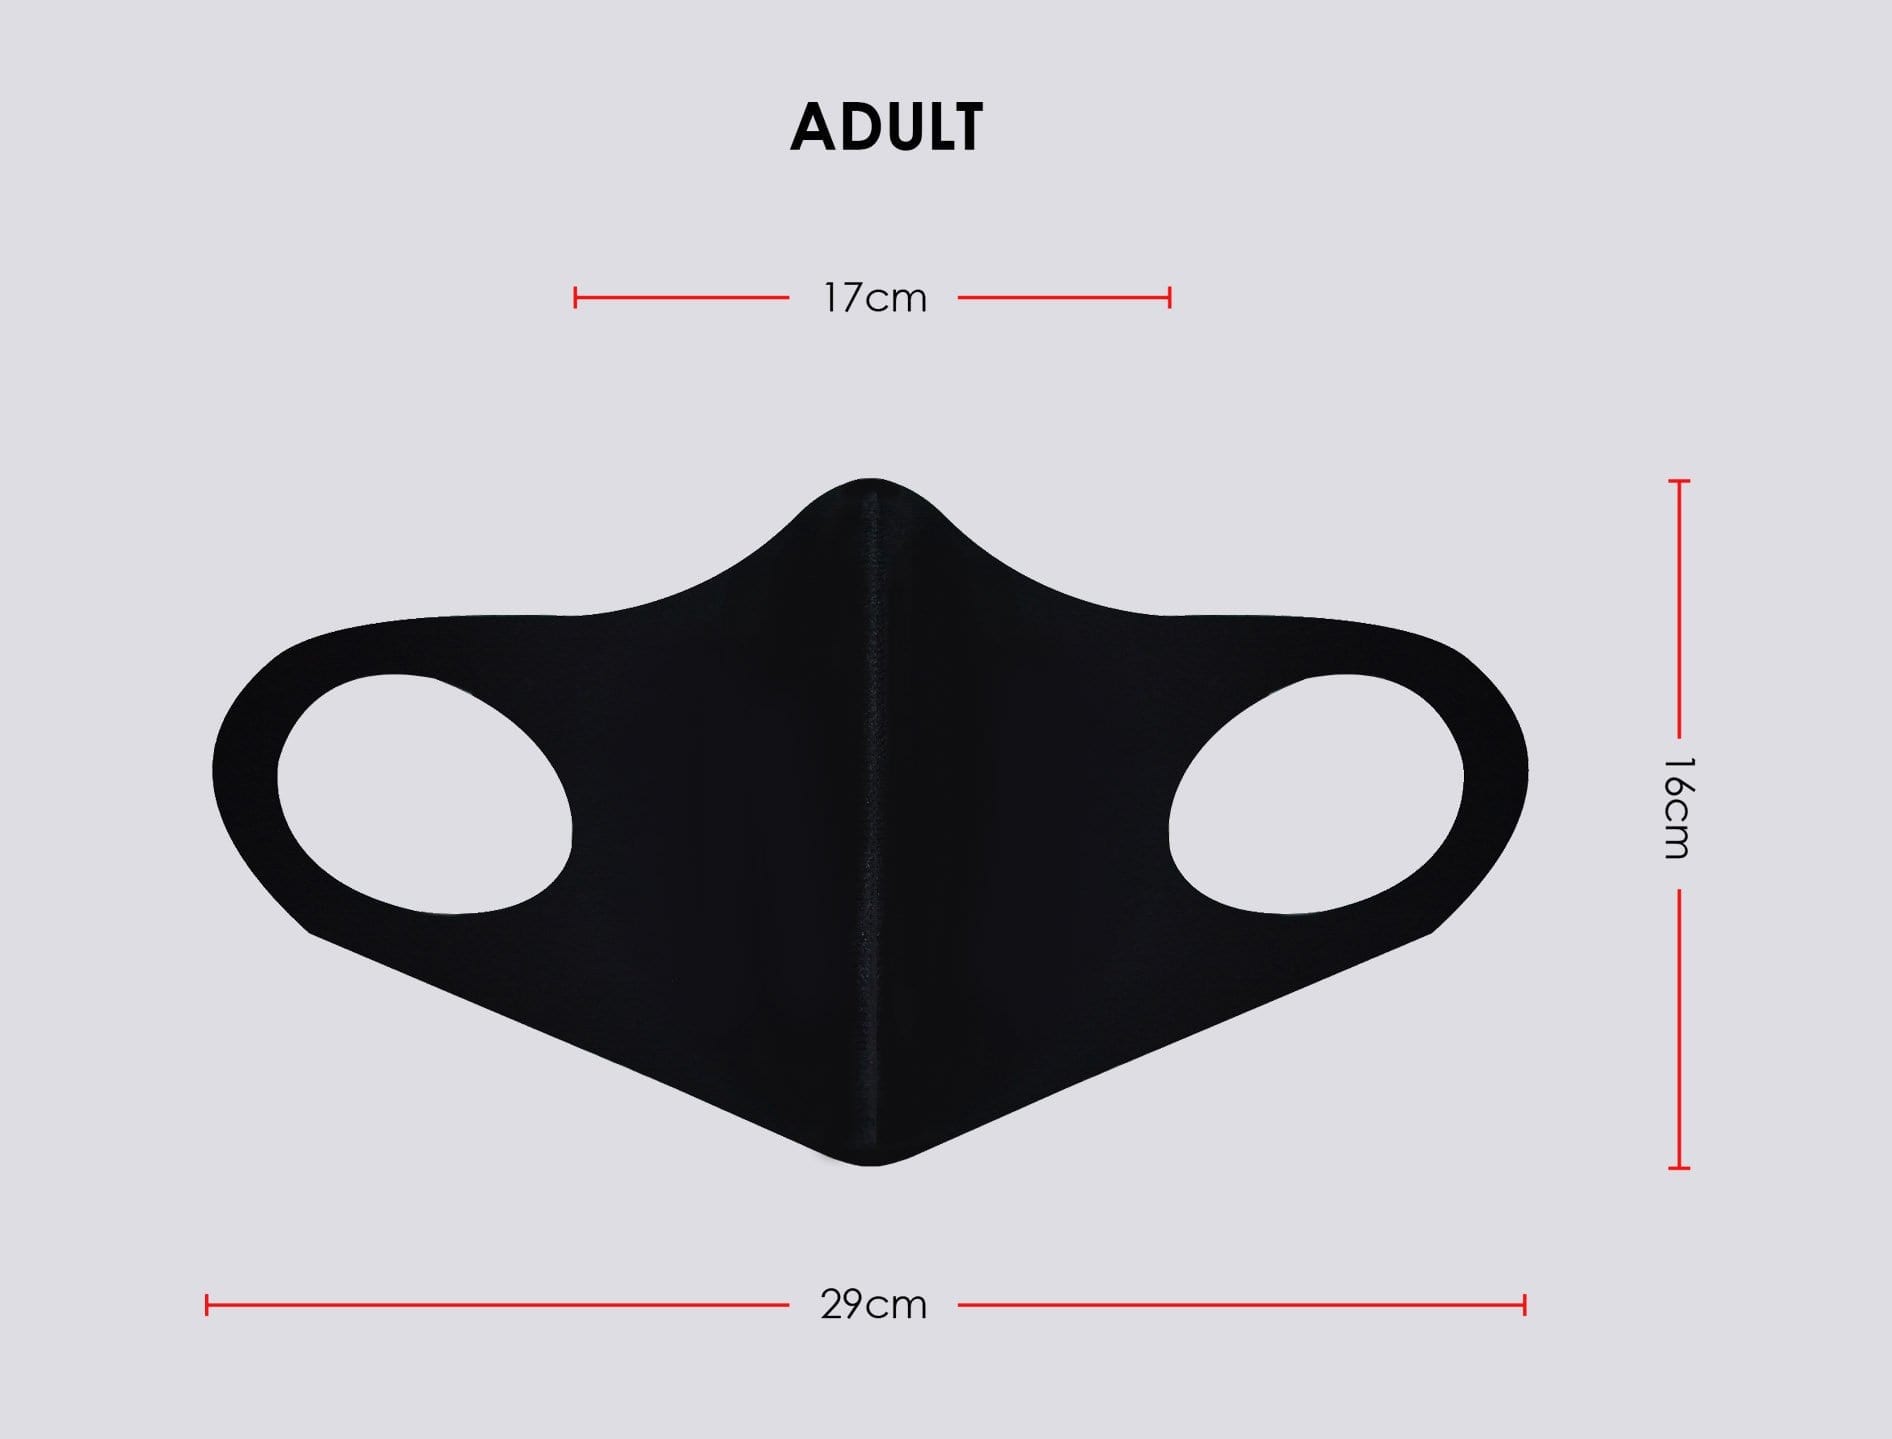 3D Mask Adult Size Measurement